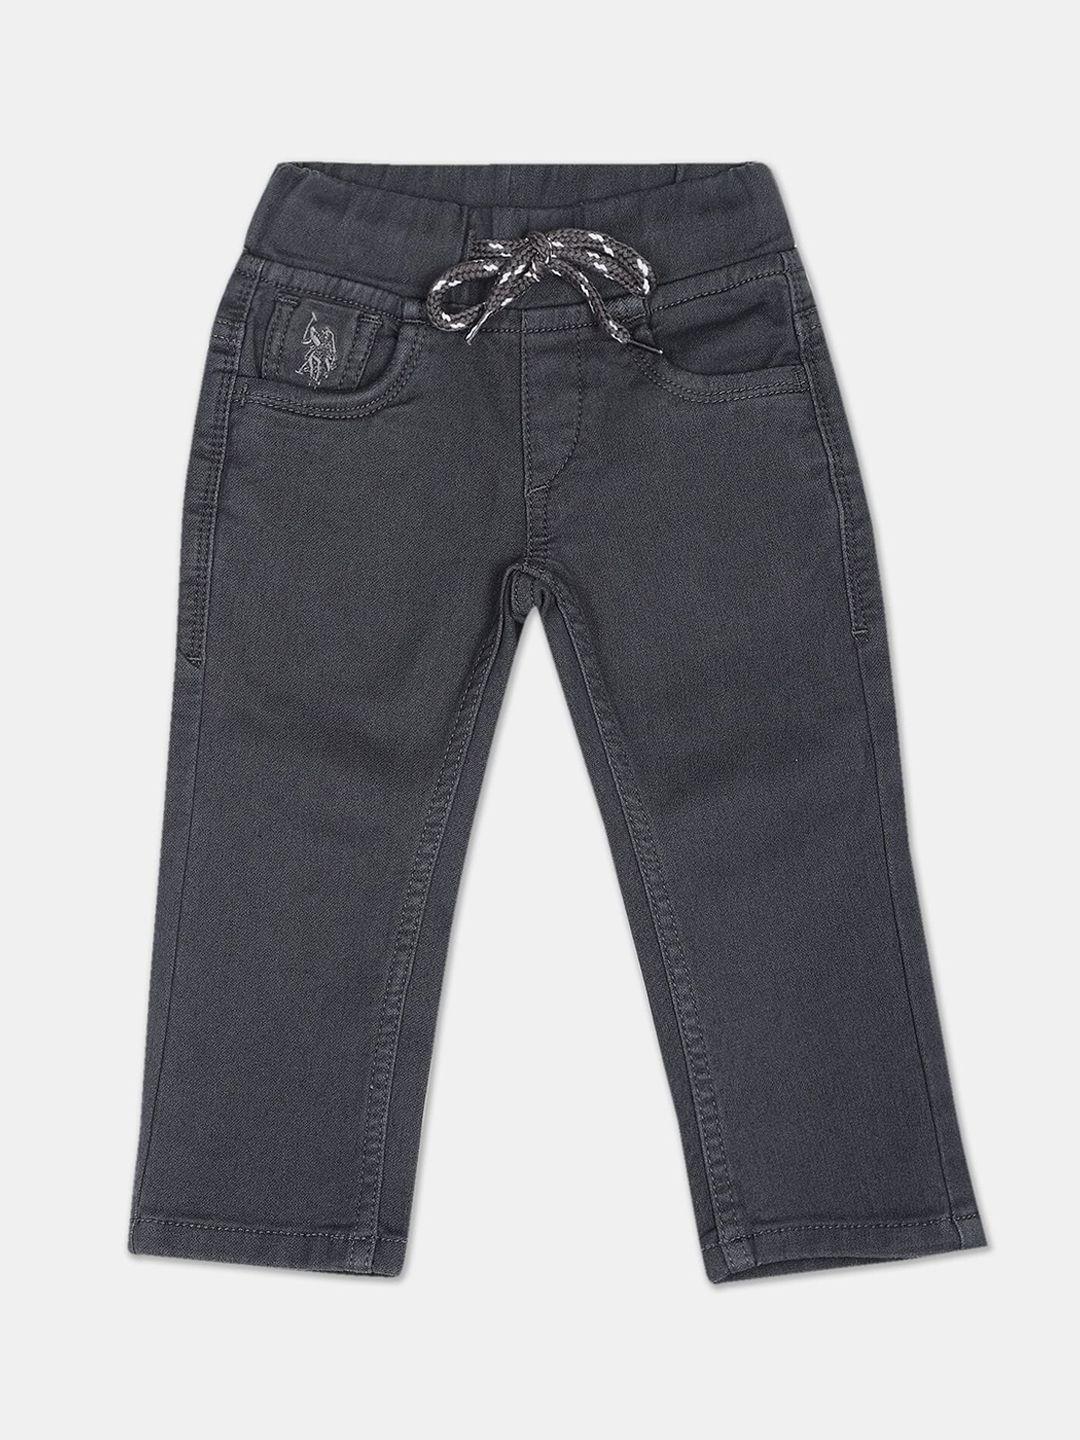 u.s. polo assn. kids boys regular fit jeans